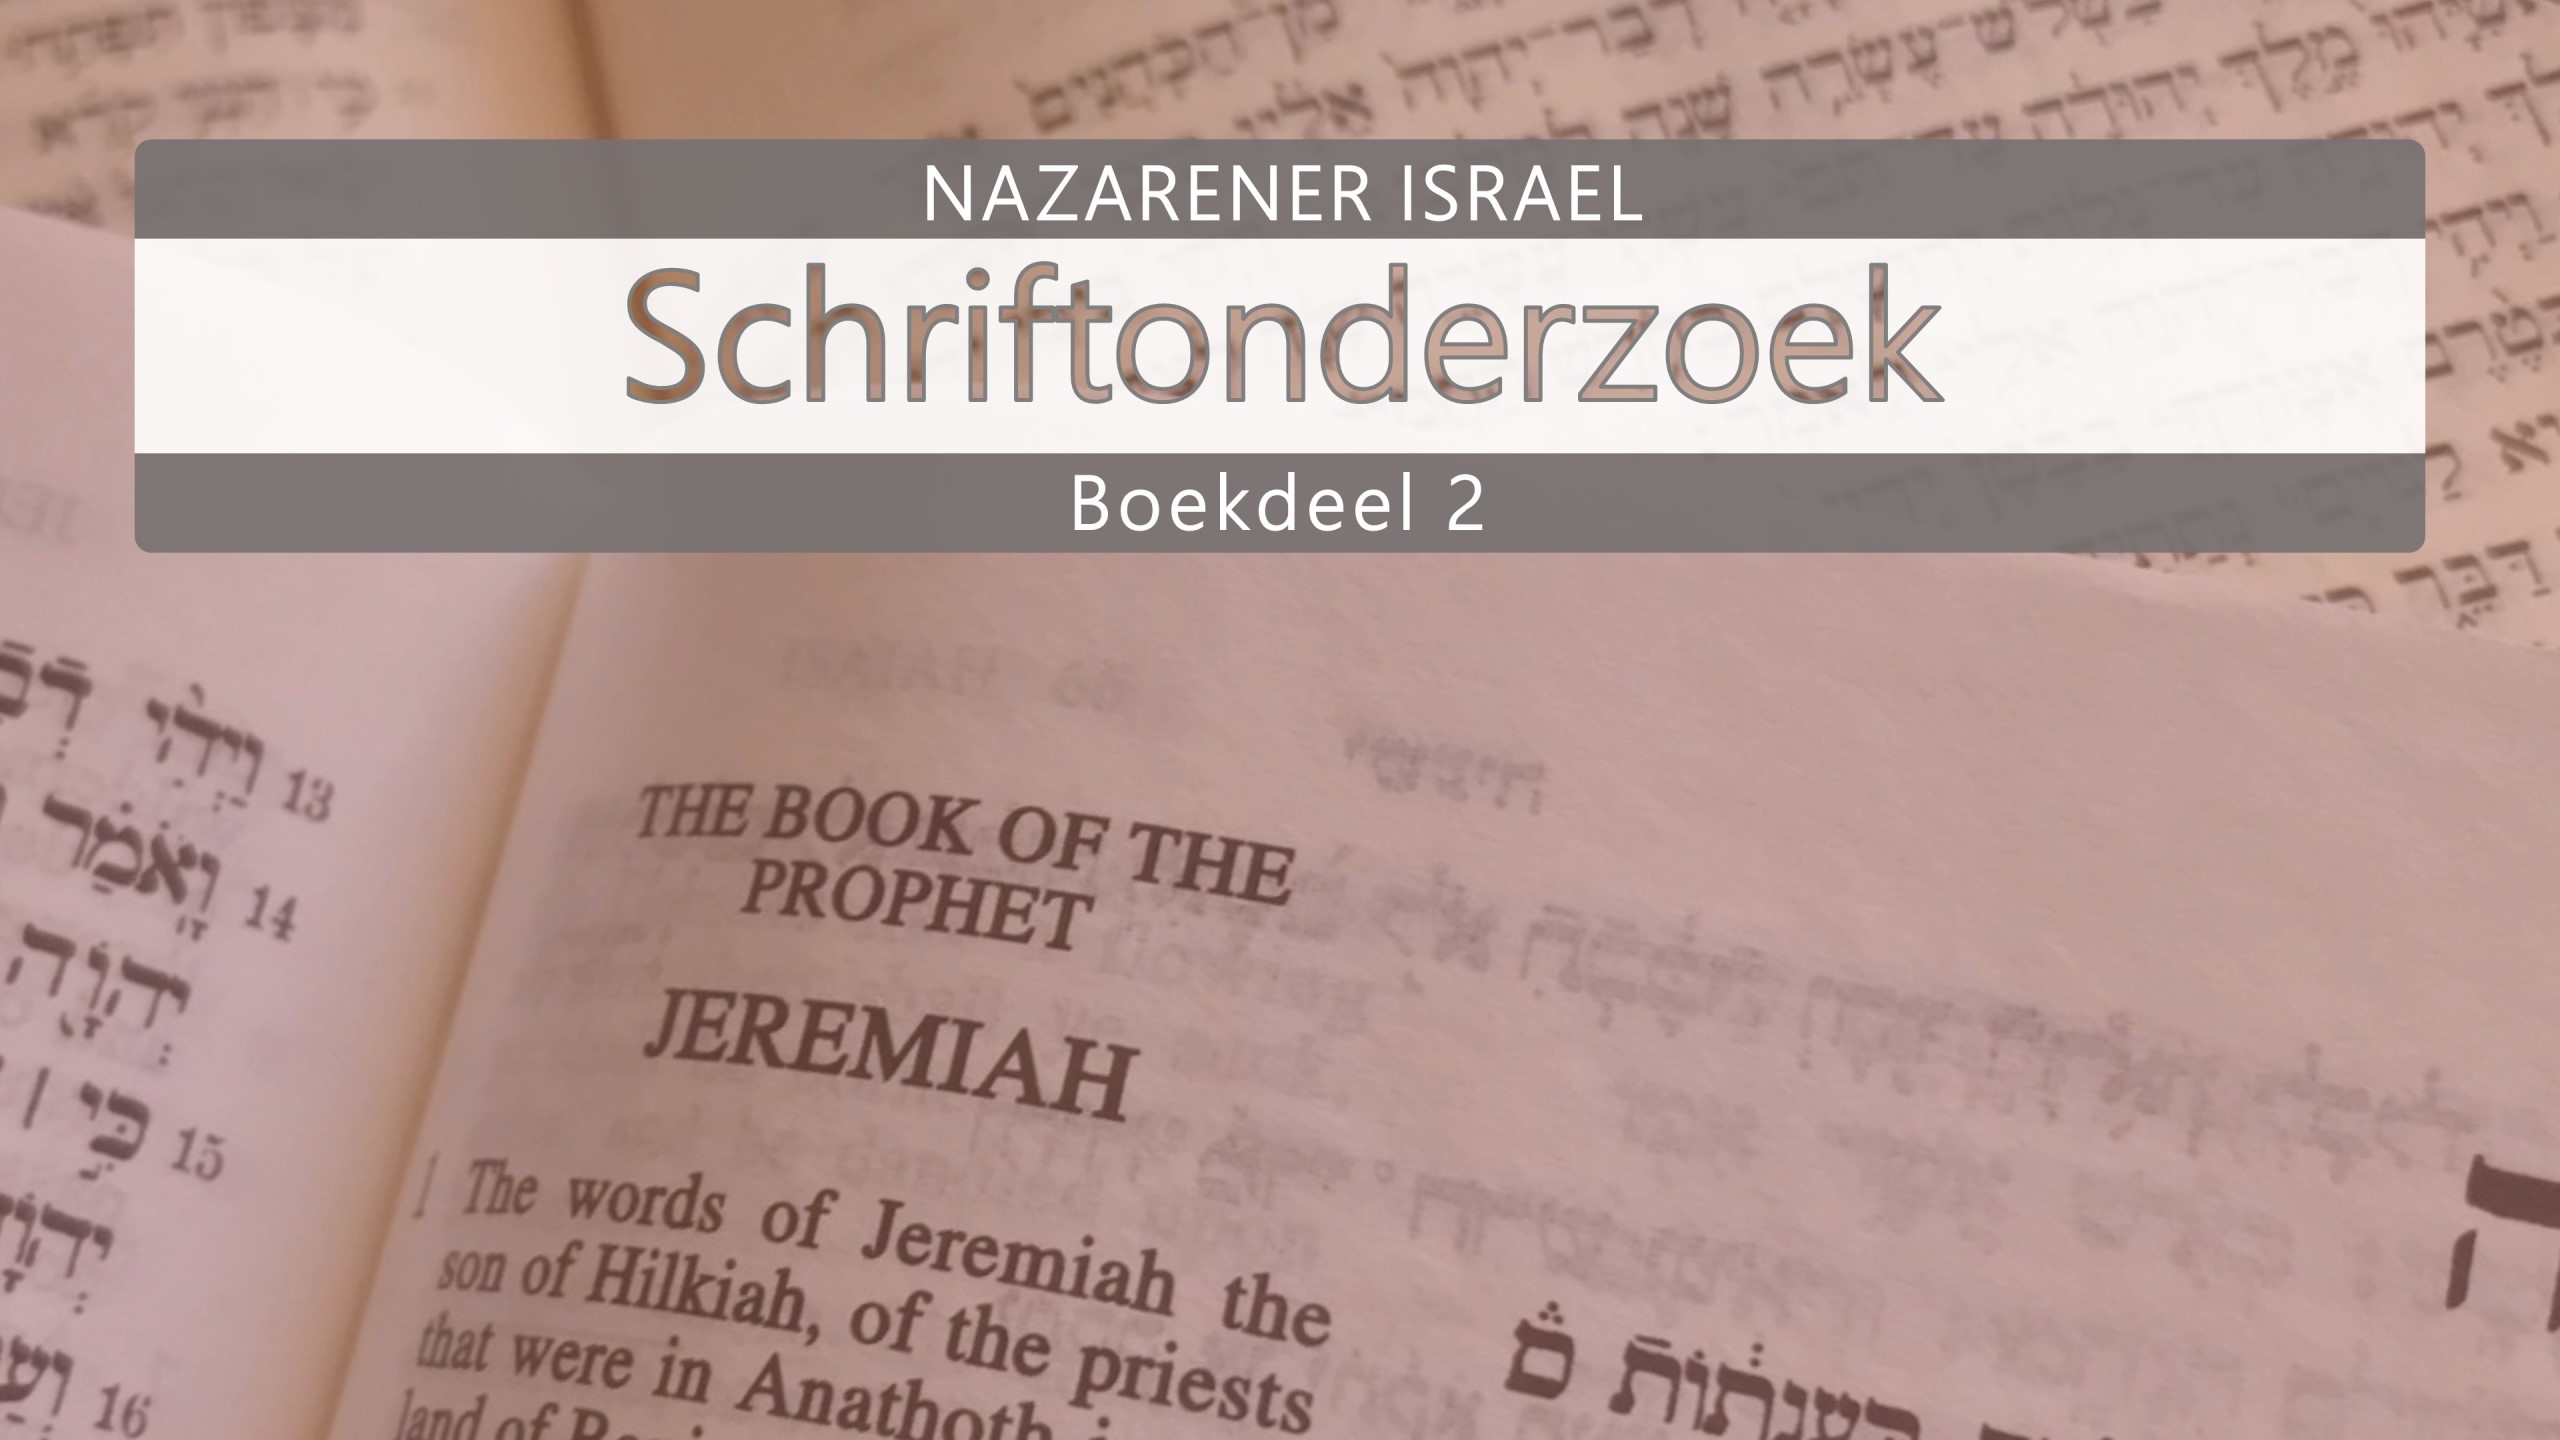 Nazarener Schriftonderzoek Boekdeel 2